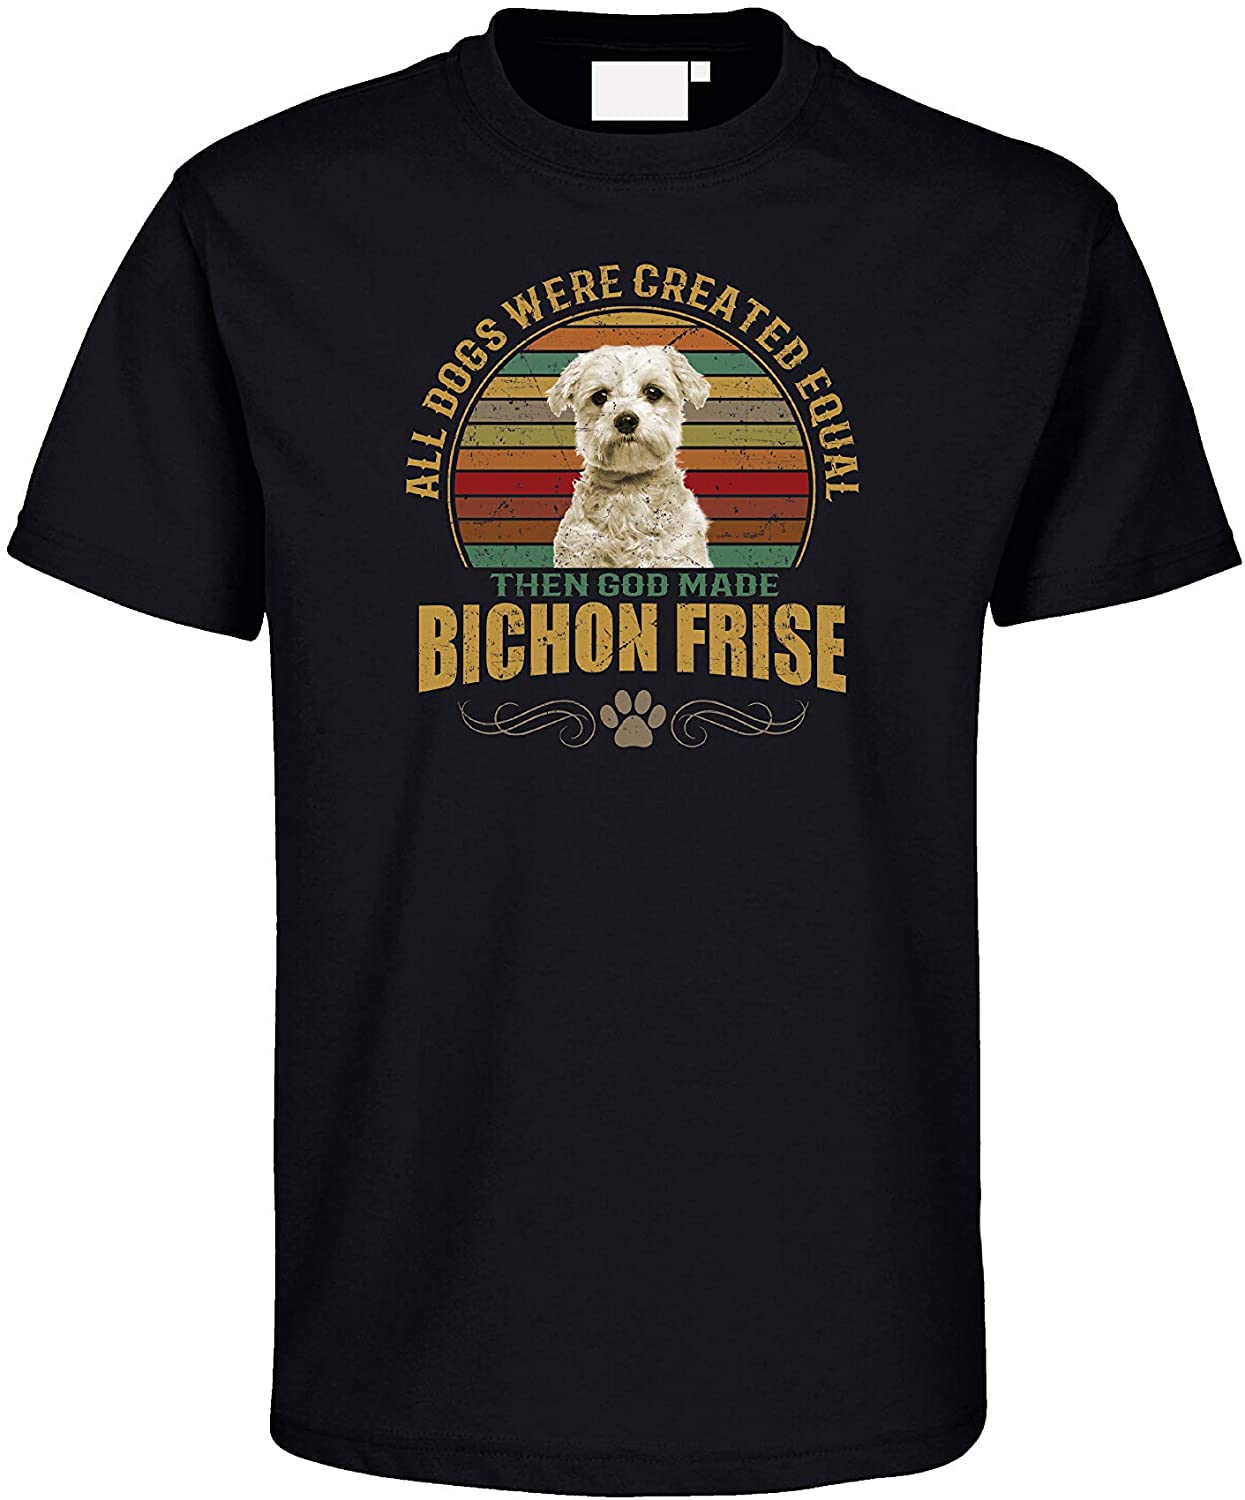  Gänseblümchendruck Bichon Frise Dog - Camiseta para Perro, diseño de Raza 